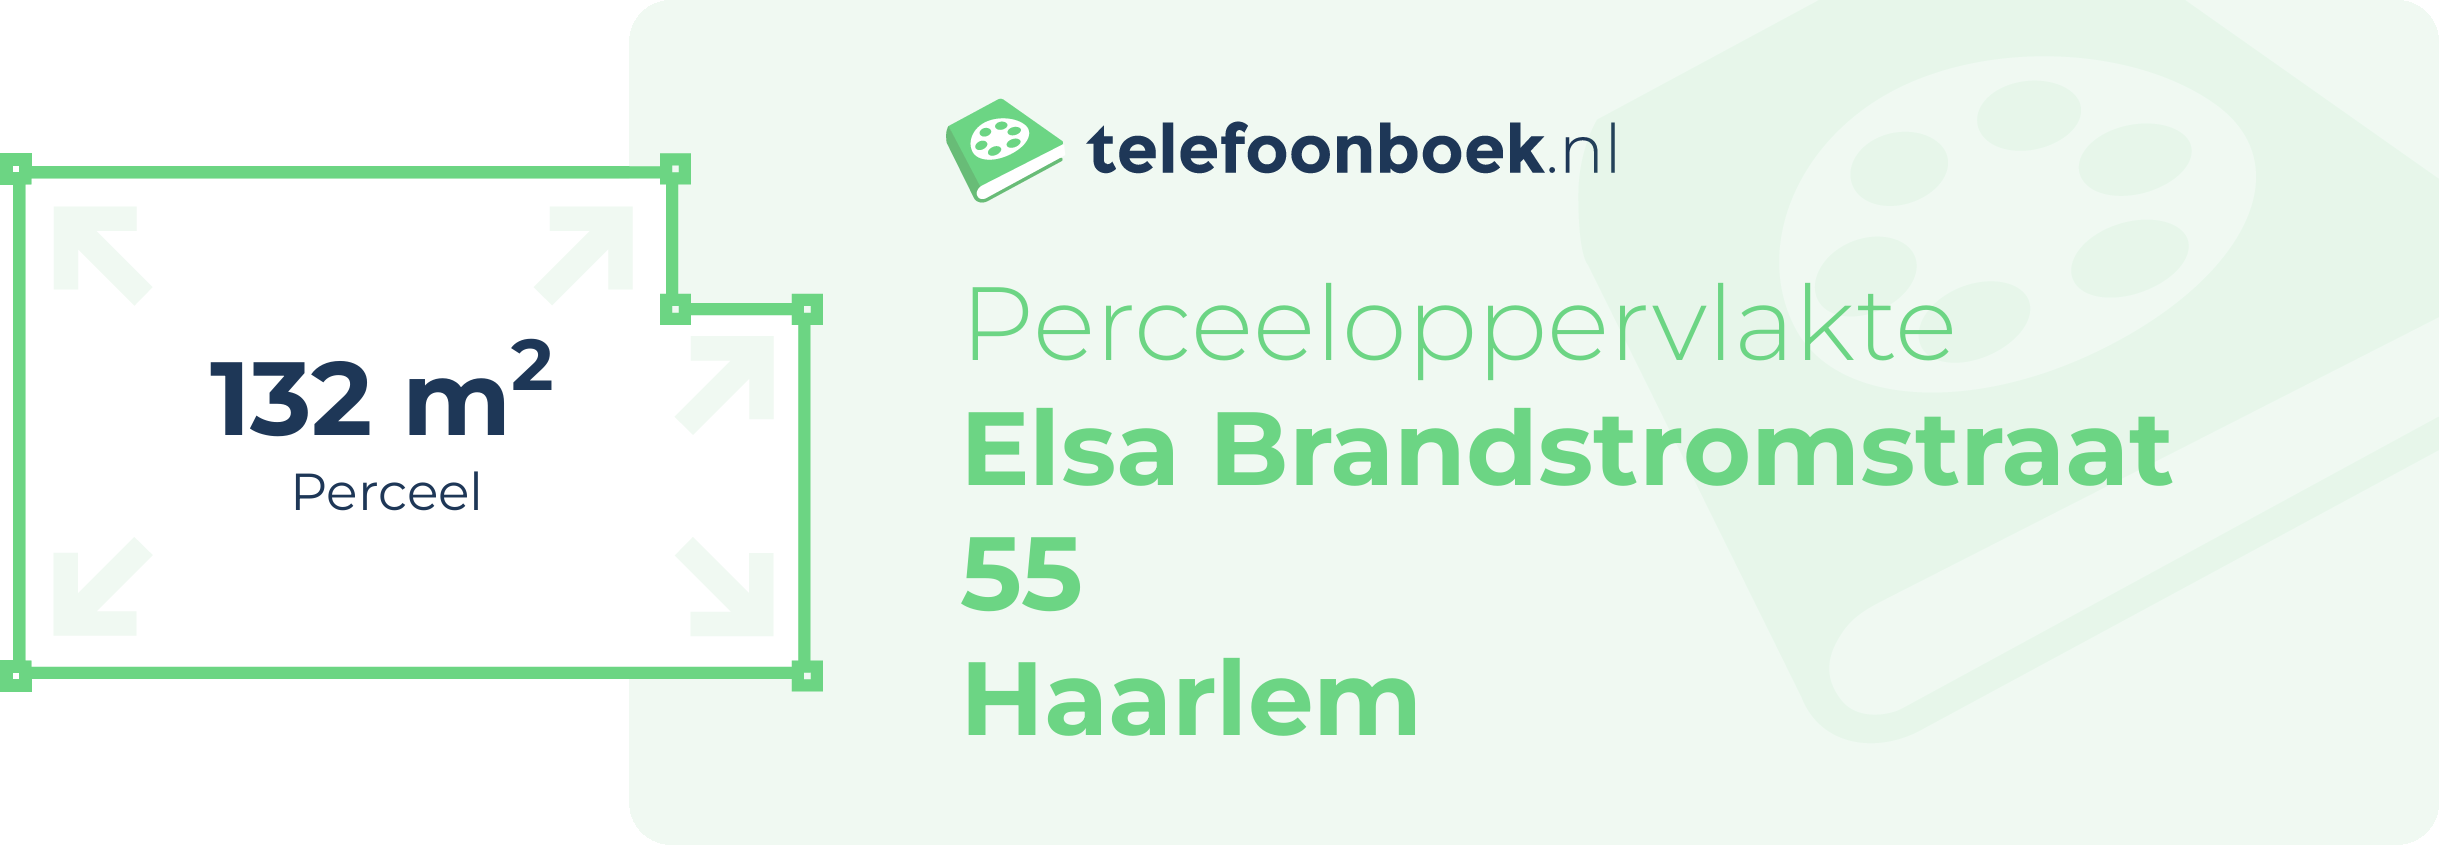 Perceeloppervlakte Elsa Brandstromstraat 55 Haarlem